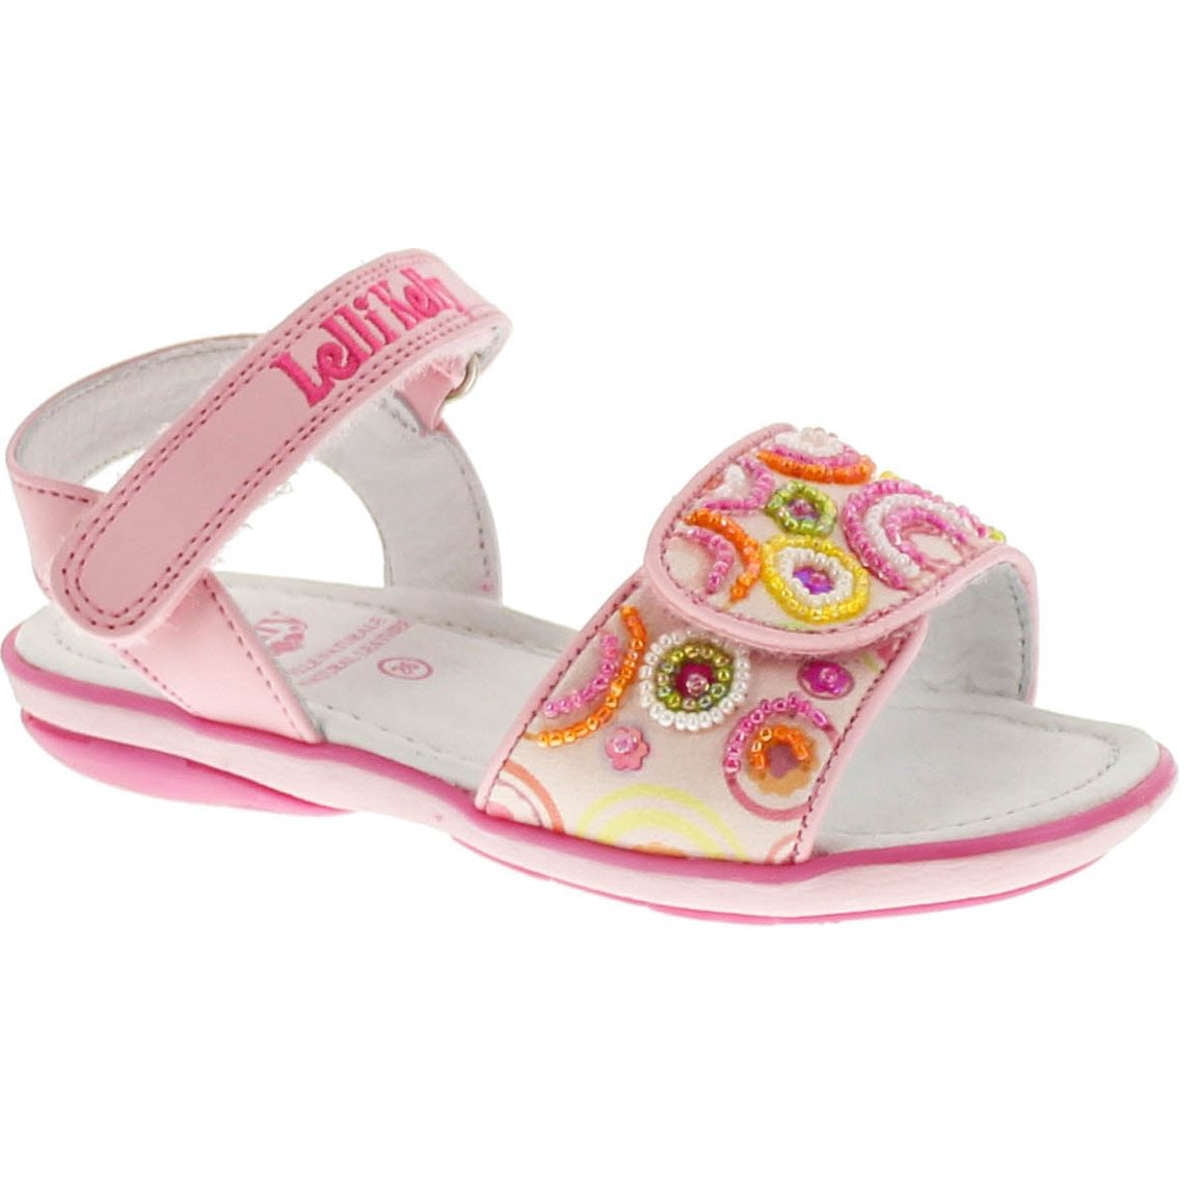 Lelli Kelly - Lelli Kelly Kids Girls LK1416 Swirl Fashion Sandals ...